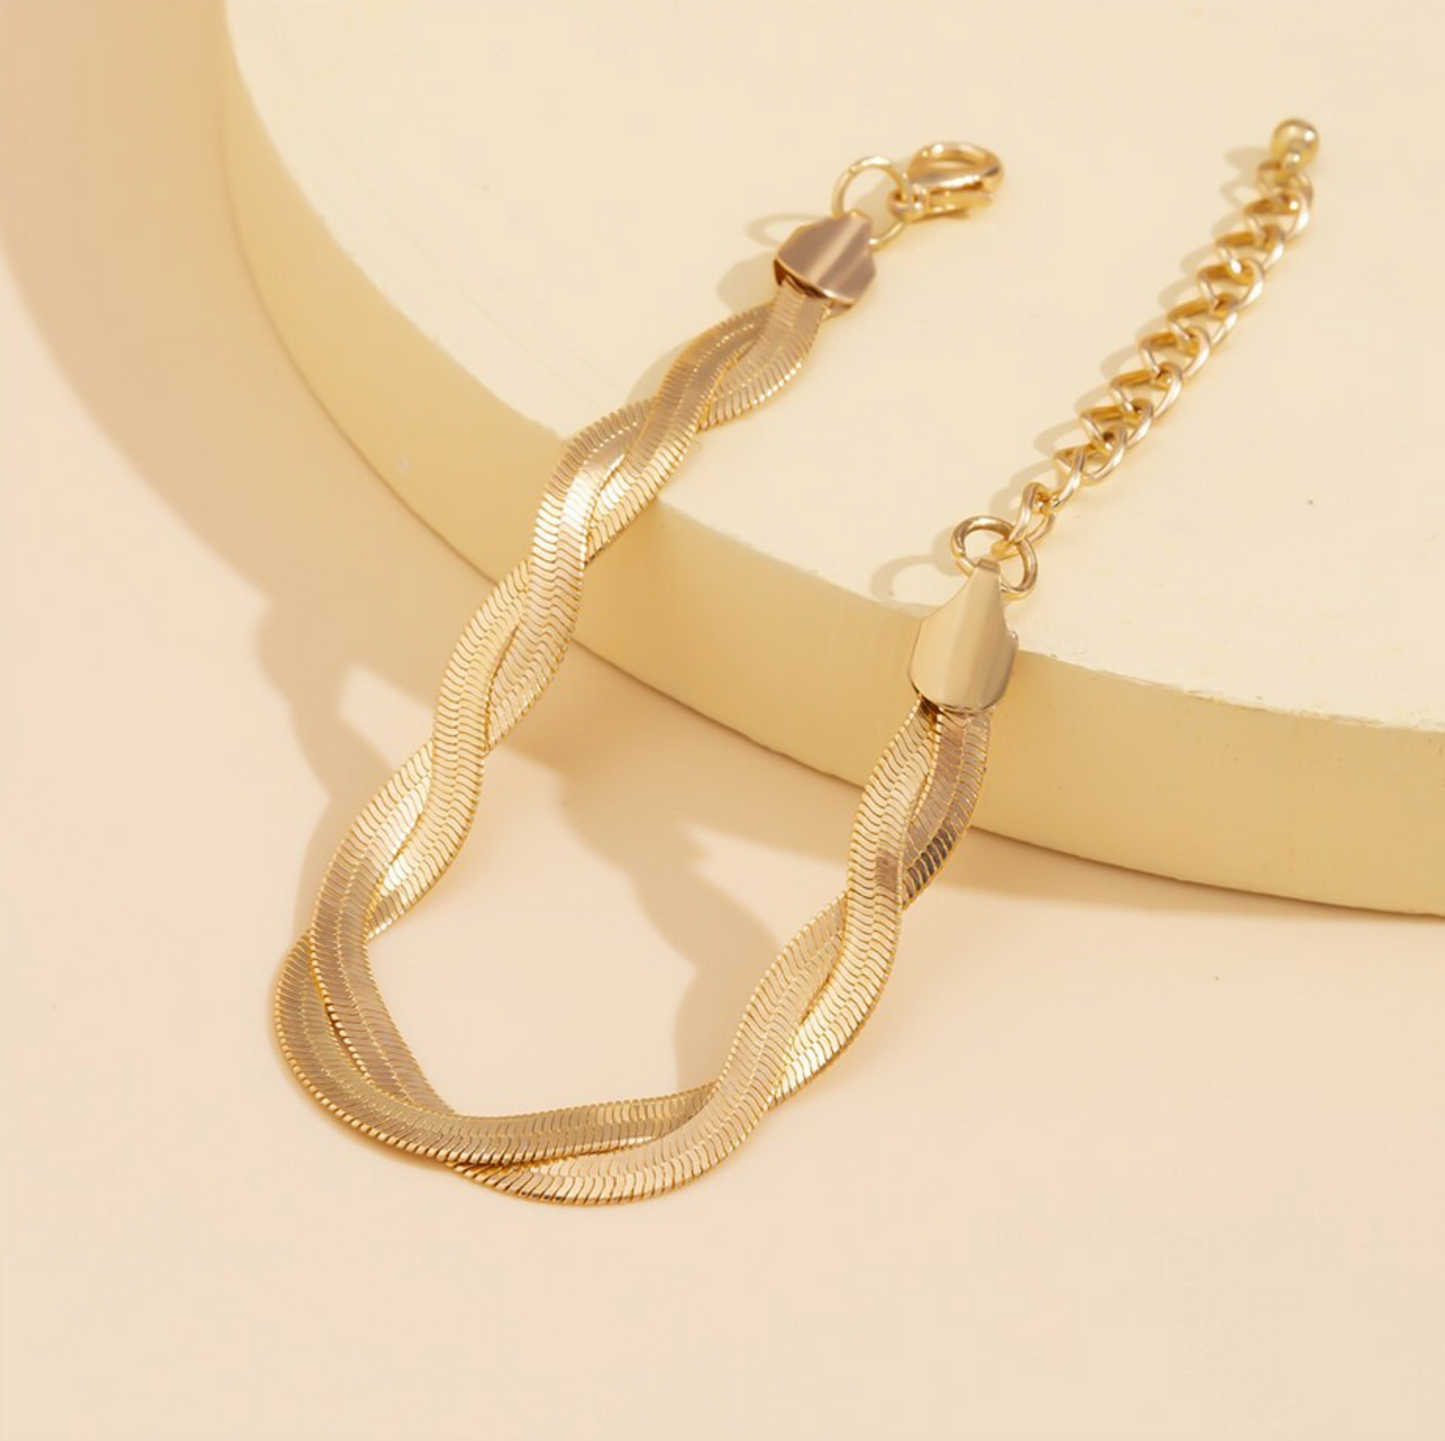 Goldtone Minimalist Braided Bracelet